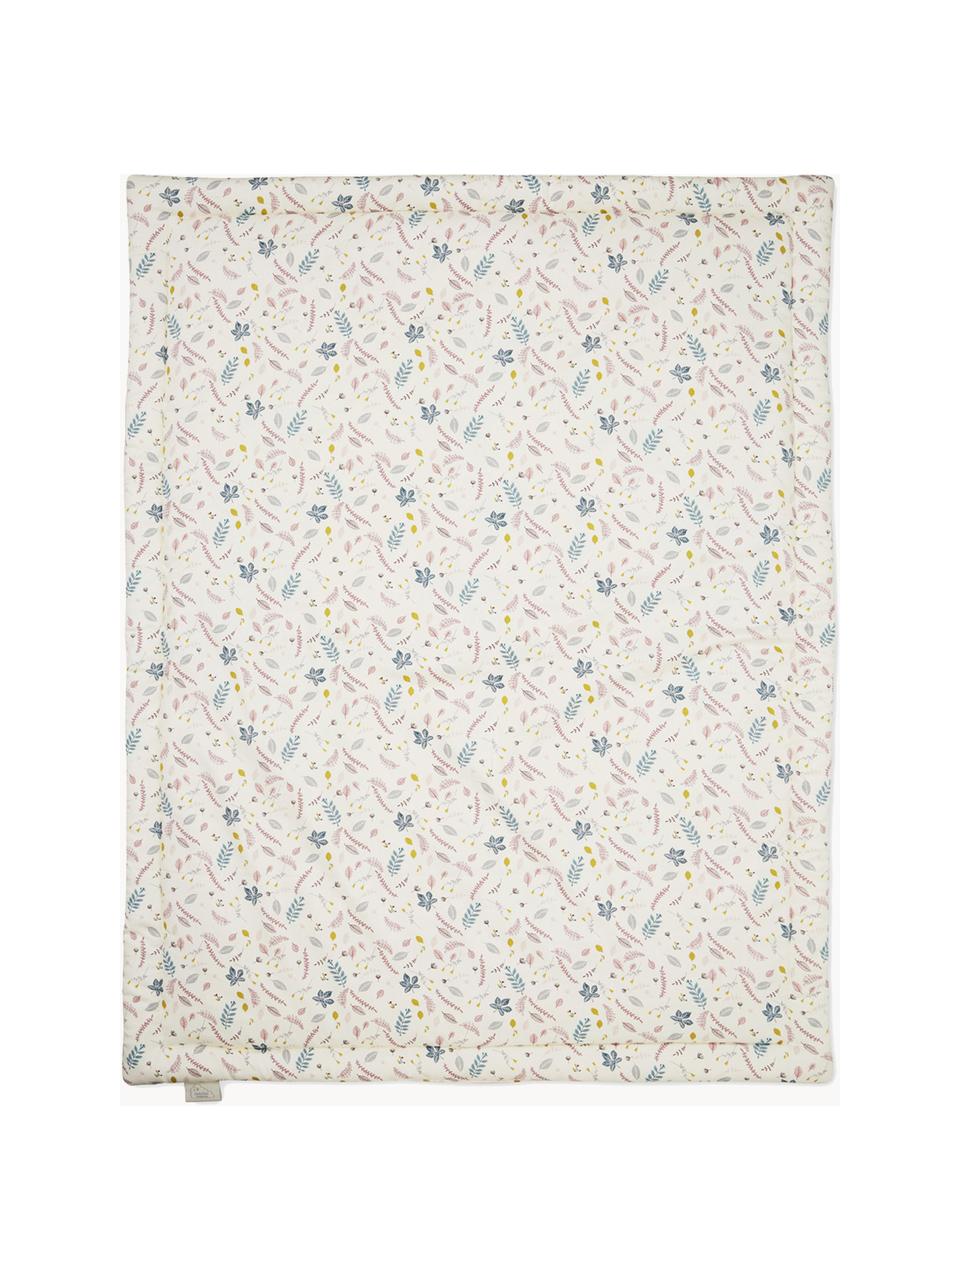 Cubrecolchón Pressed Leaves, Funda: 100% algodón ecológico co, Rosa y blanco crema con estampado multicolor, An 90 x L 120 cm